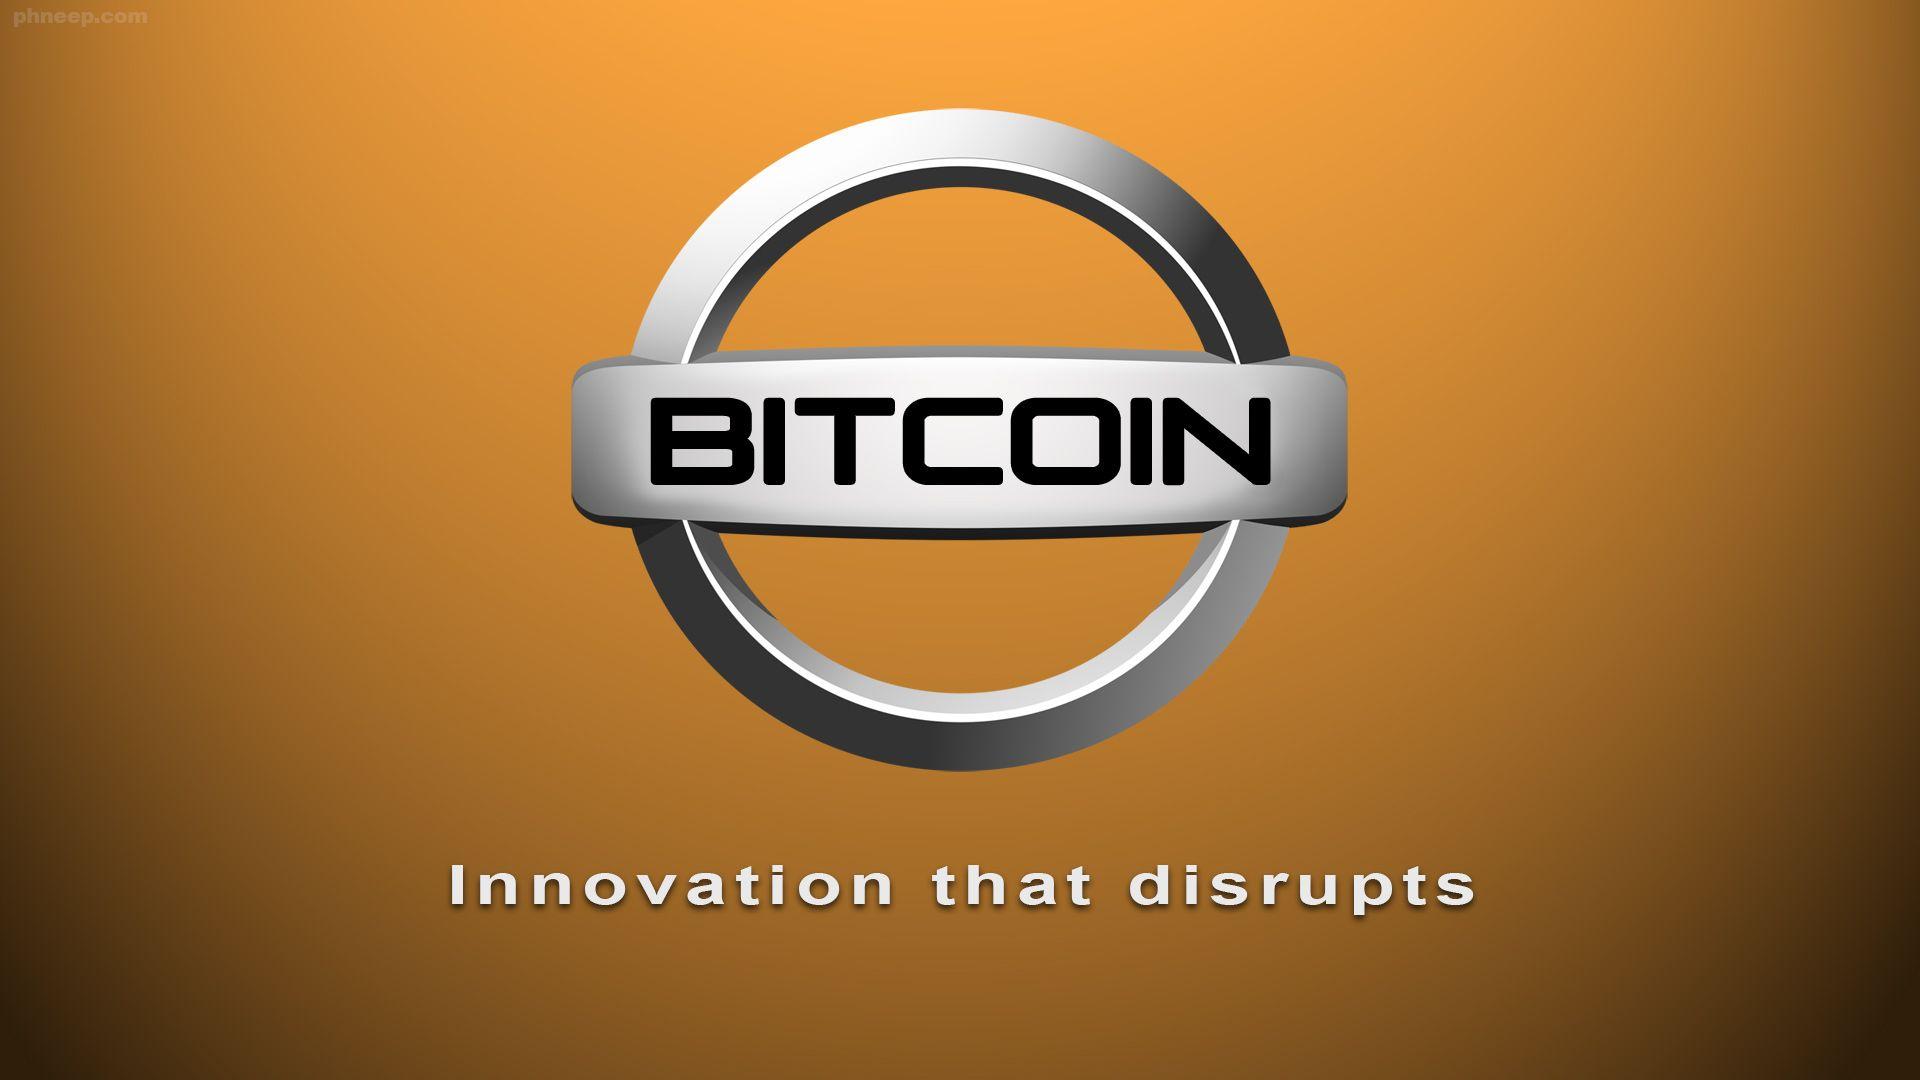 Orange Circle Car Logo - Phneep! Bitcoin Car Logos